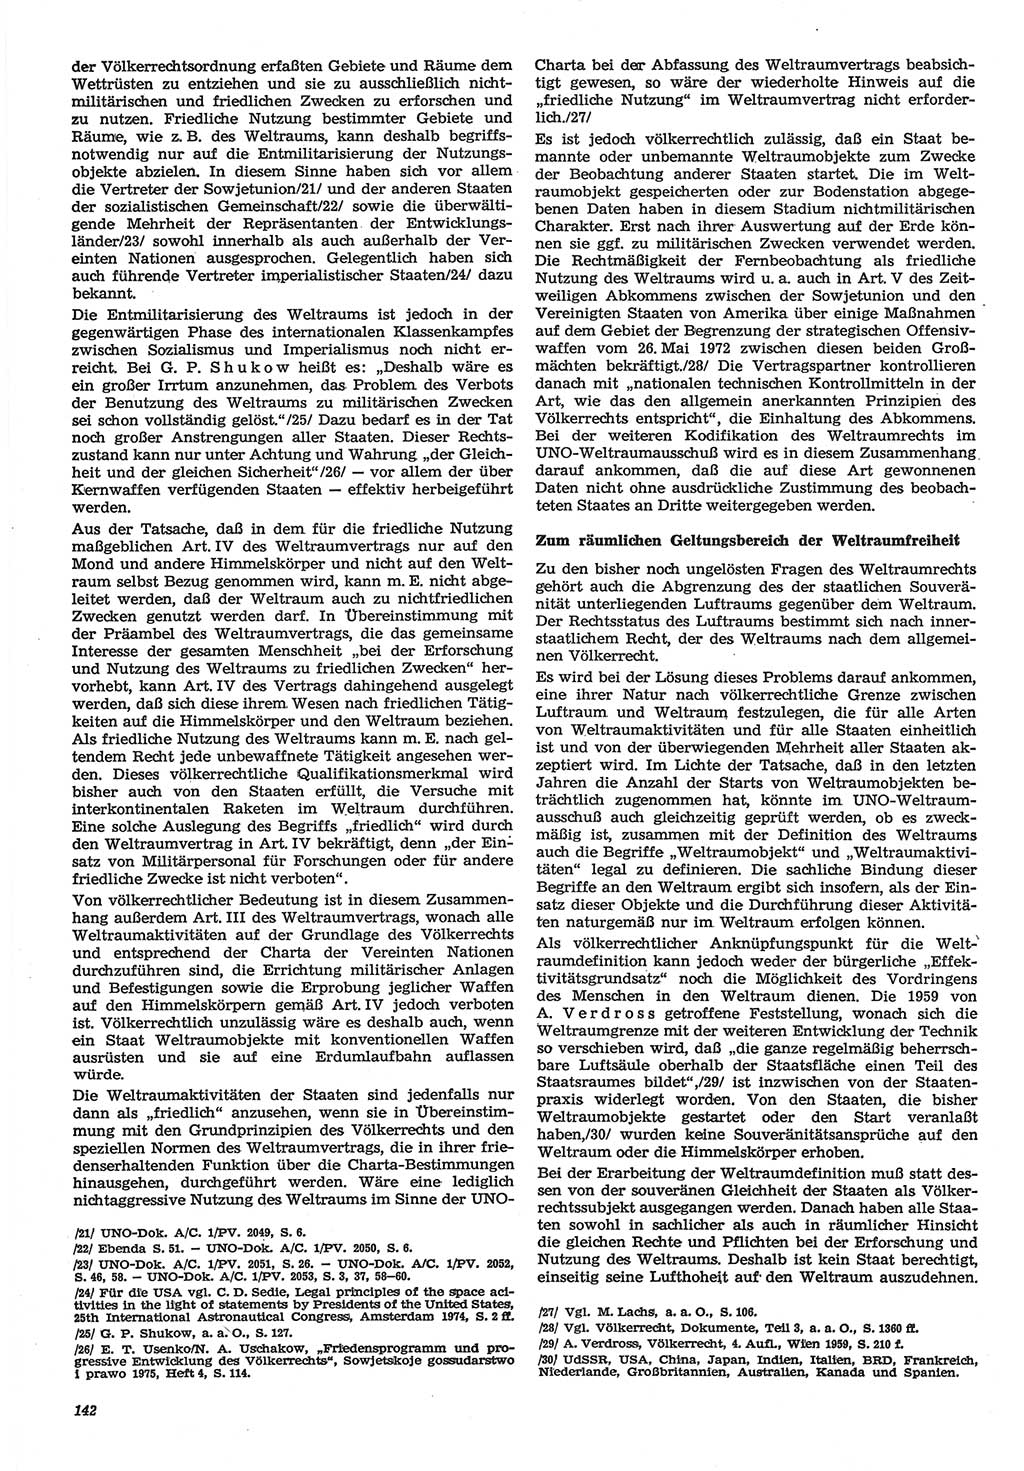 Neue Justiz (NJ), Zeitschrift für Recht und Rechtswissenschaft-Zeitschrift, sozialistisches Recht und Gesetzlichkeit, 31. Jahrgang 1977, Seite 142 (NJ DDR 1977, S. 142)